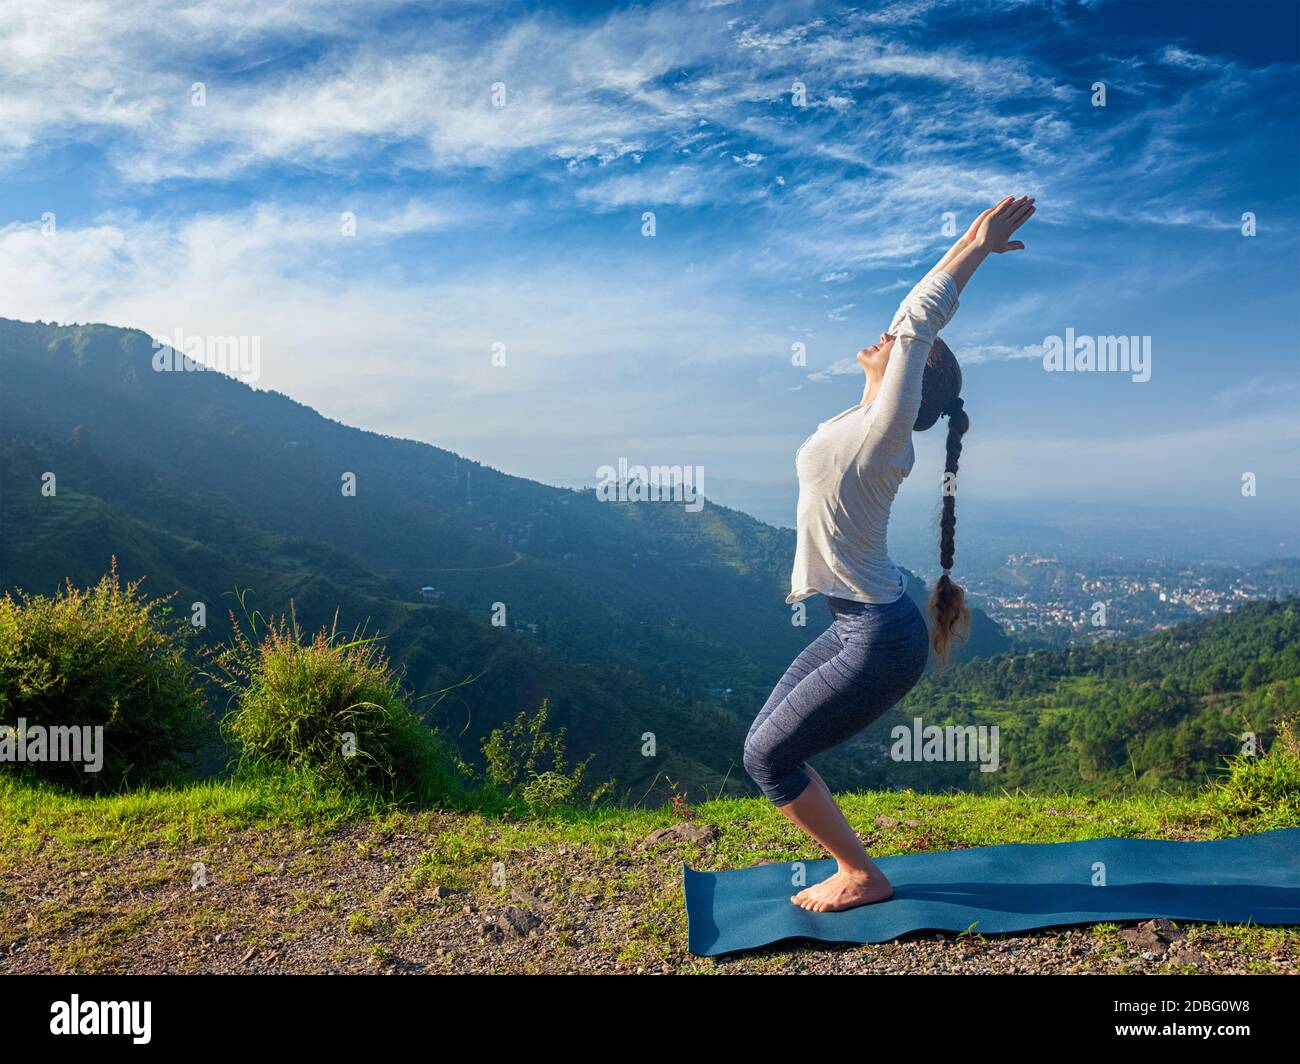 Jeune femme sportive faisant du yoga asana Utkatasana (pose de chaise) en plein air dans les montagnes Himalaya le matin. Himachal Pradesh, Inde Banque D'Images